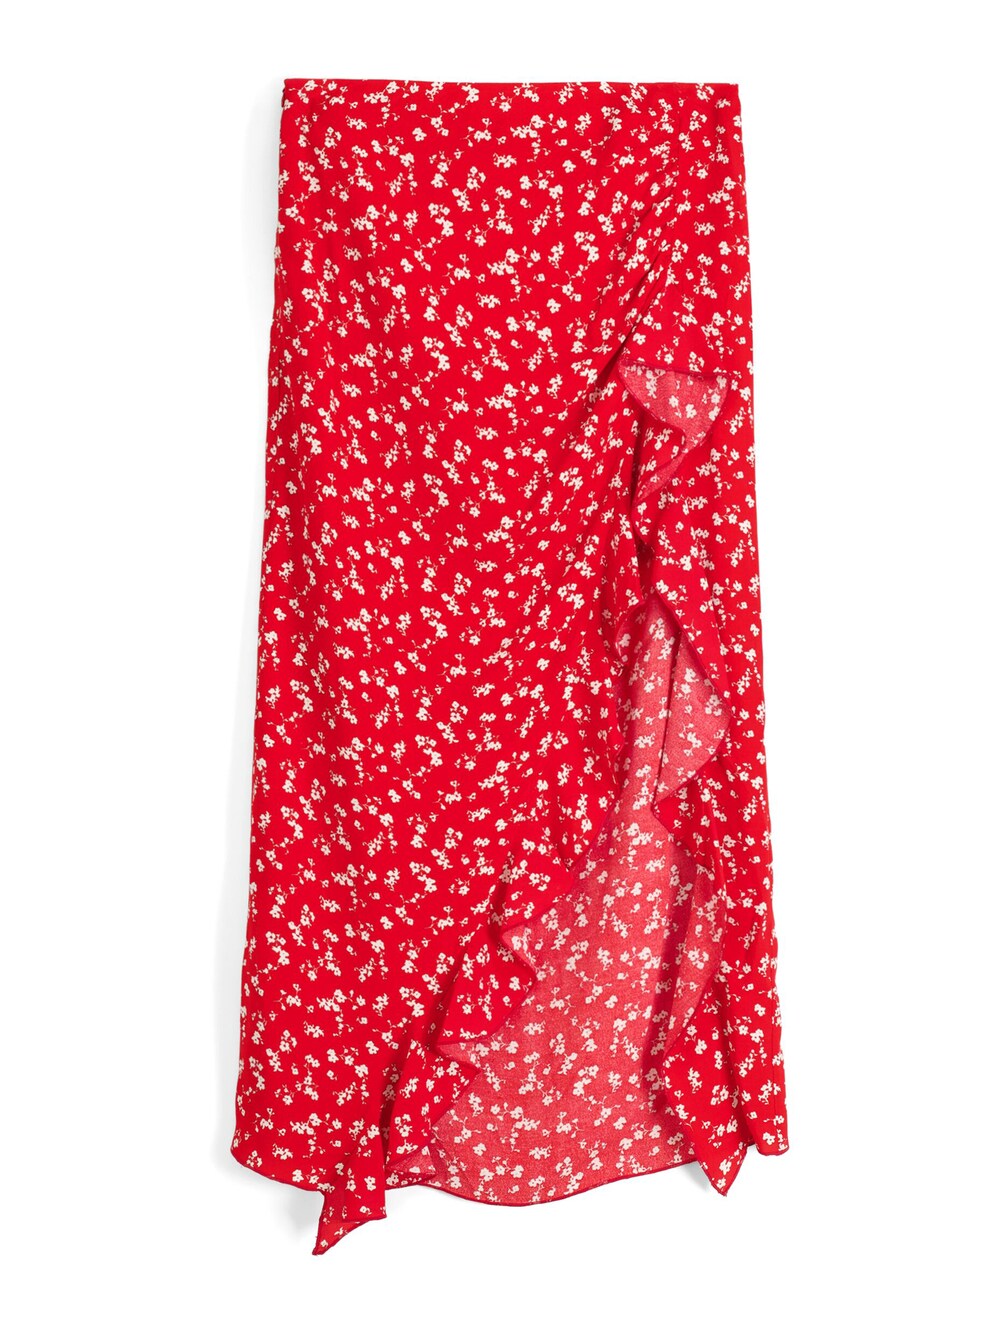 Юбка Bershka, красный юбка bershka c принтом 44 размер